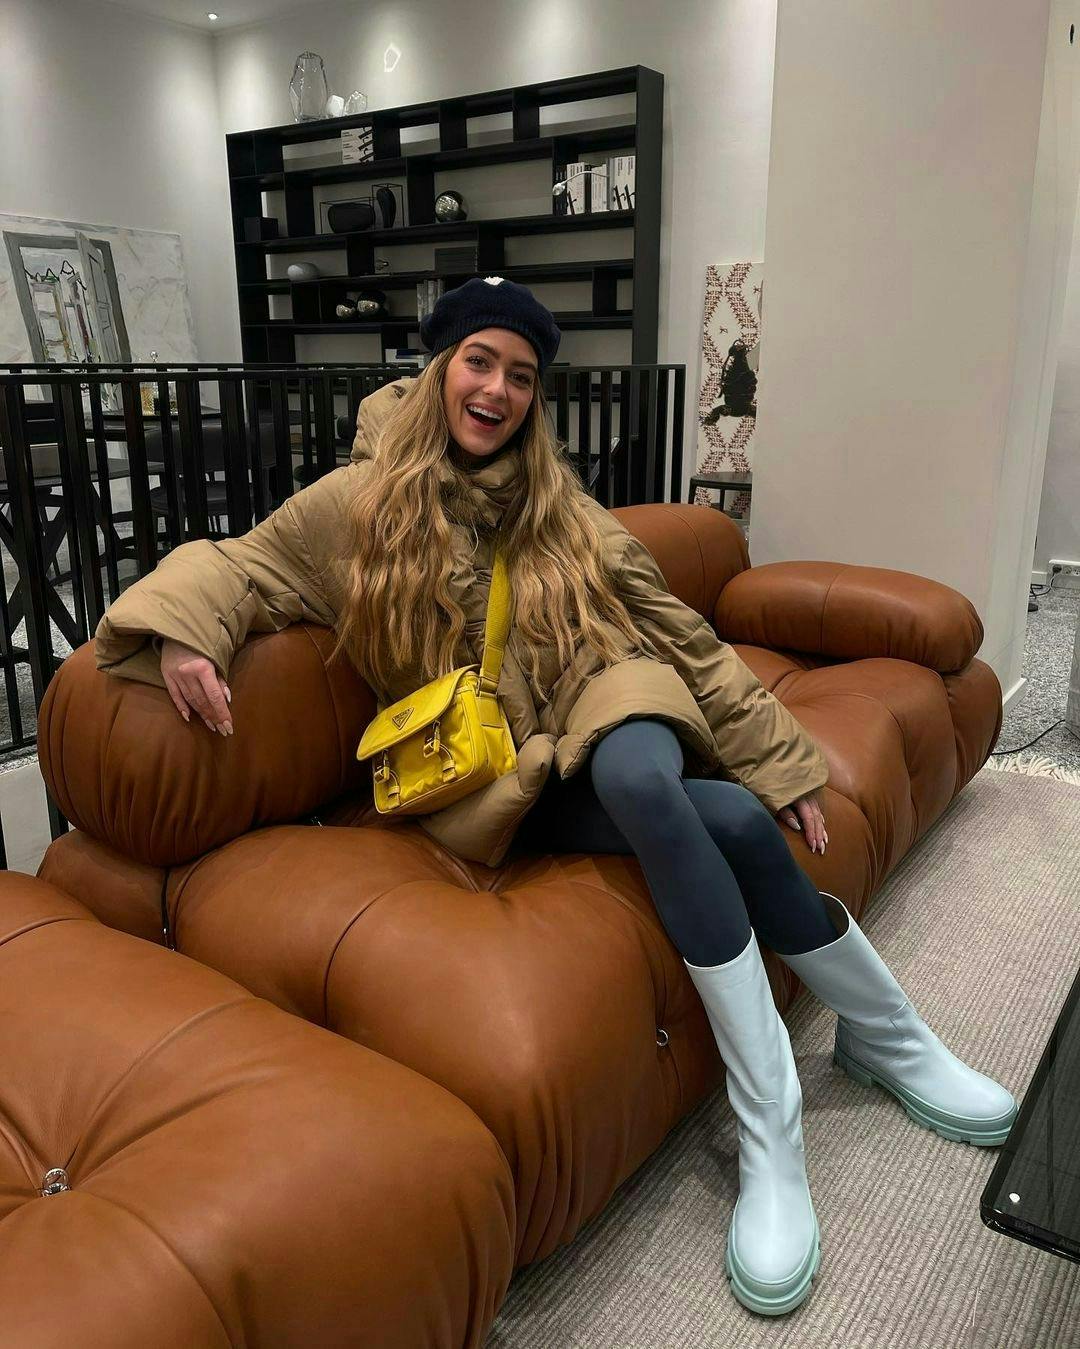 Ce nouveau canapé qui obsède Instagram 